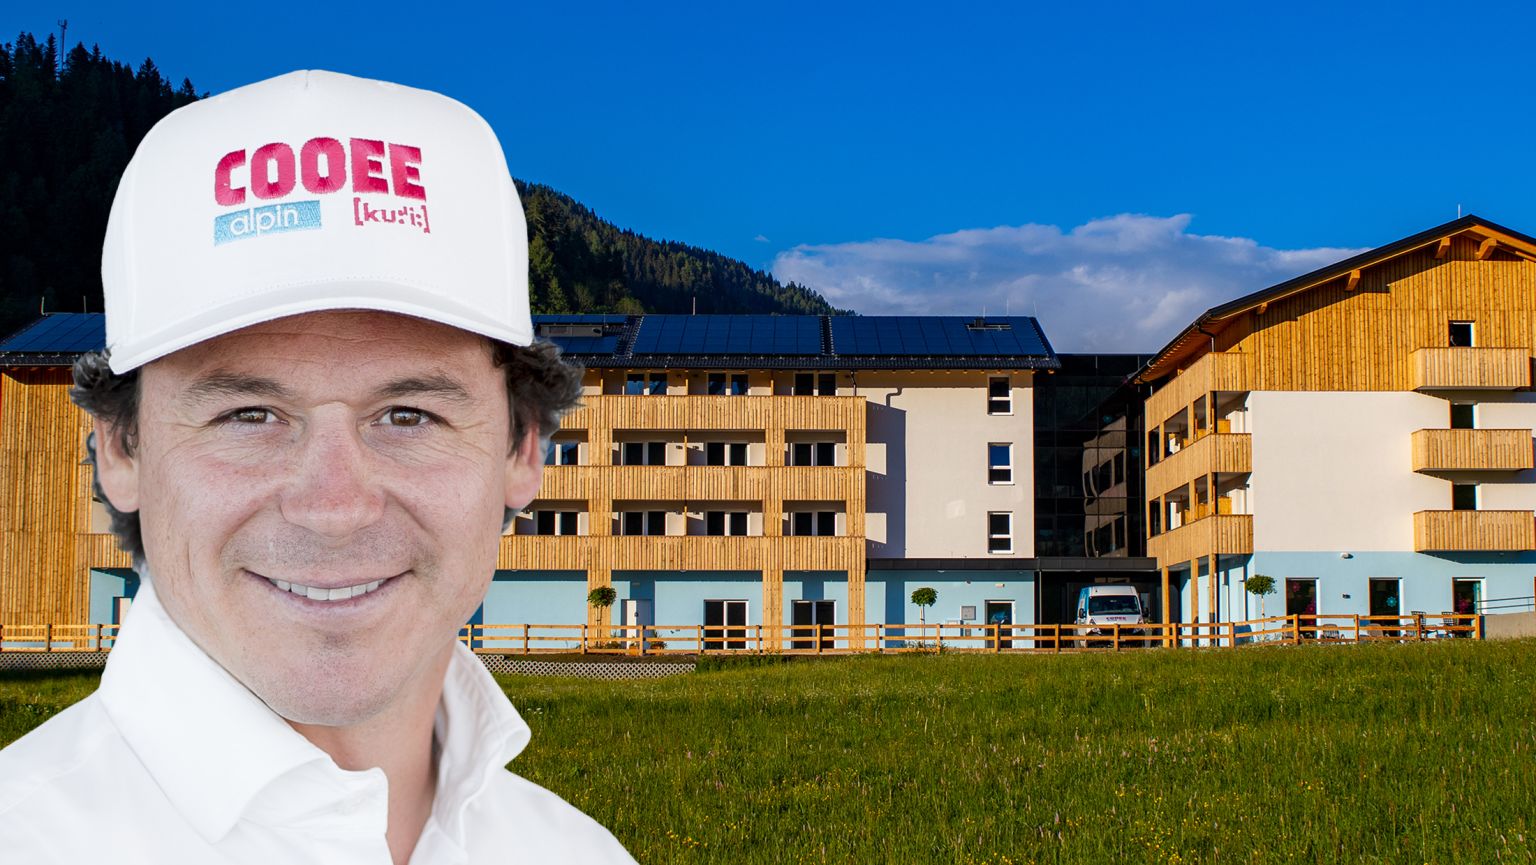 Drei Jahre früher als geplant: COOEE alpin Hotel zahlt Crowdinvestoren 1,3 Millionen Euro